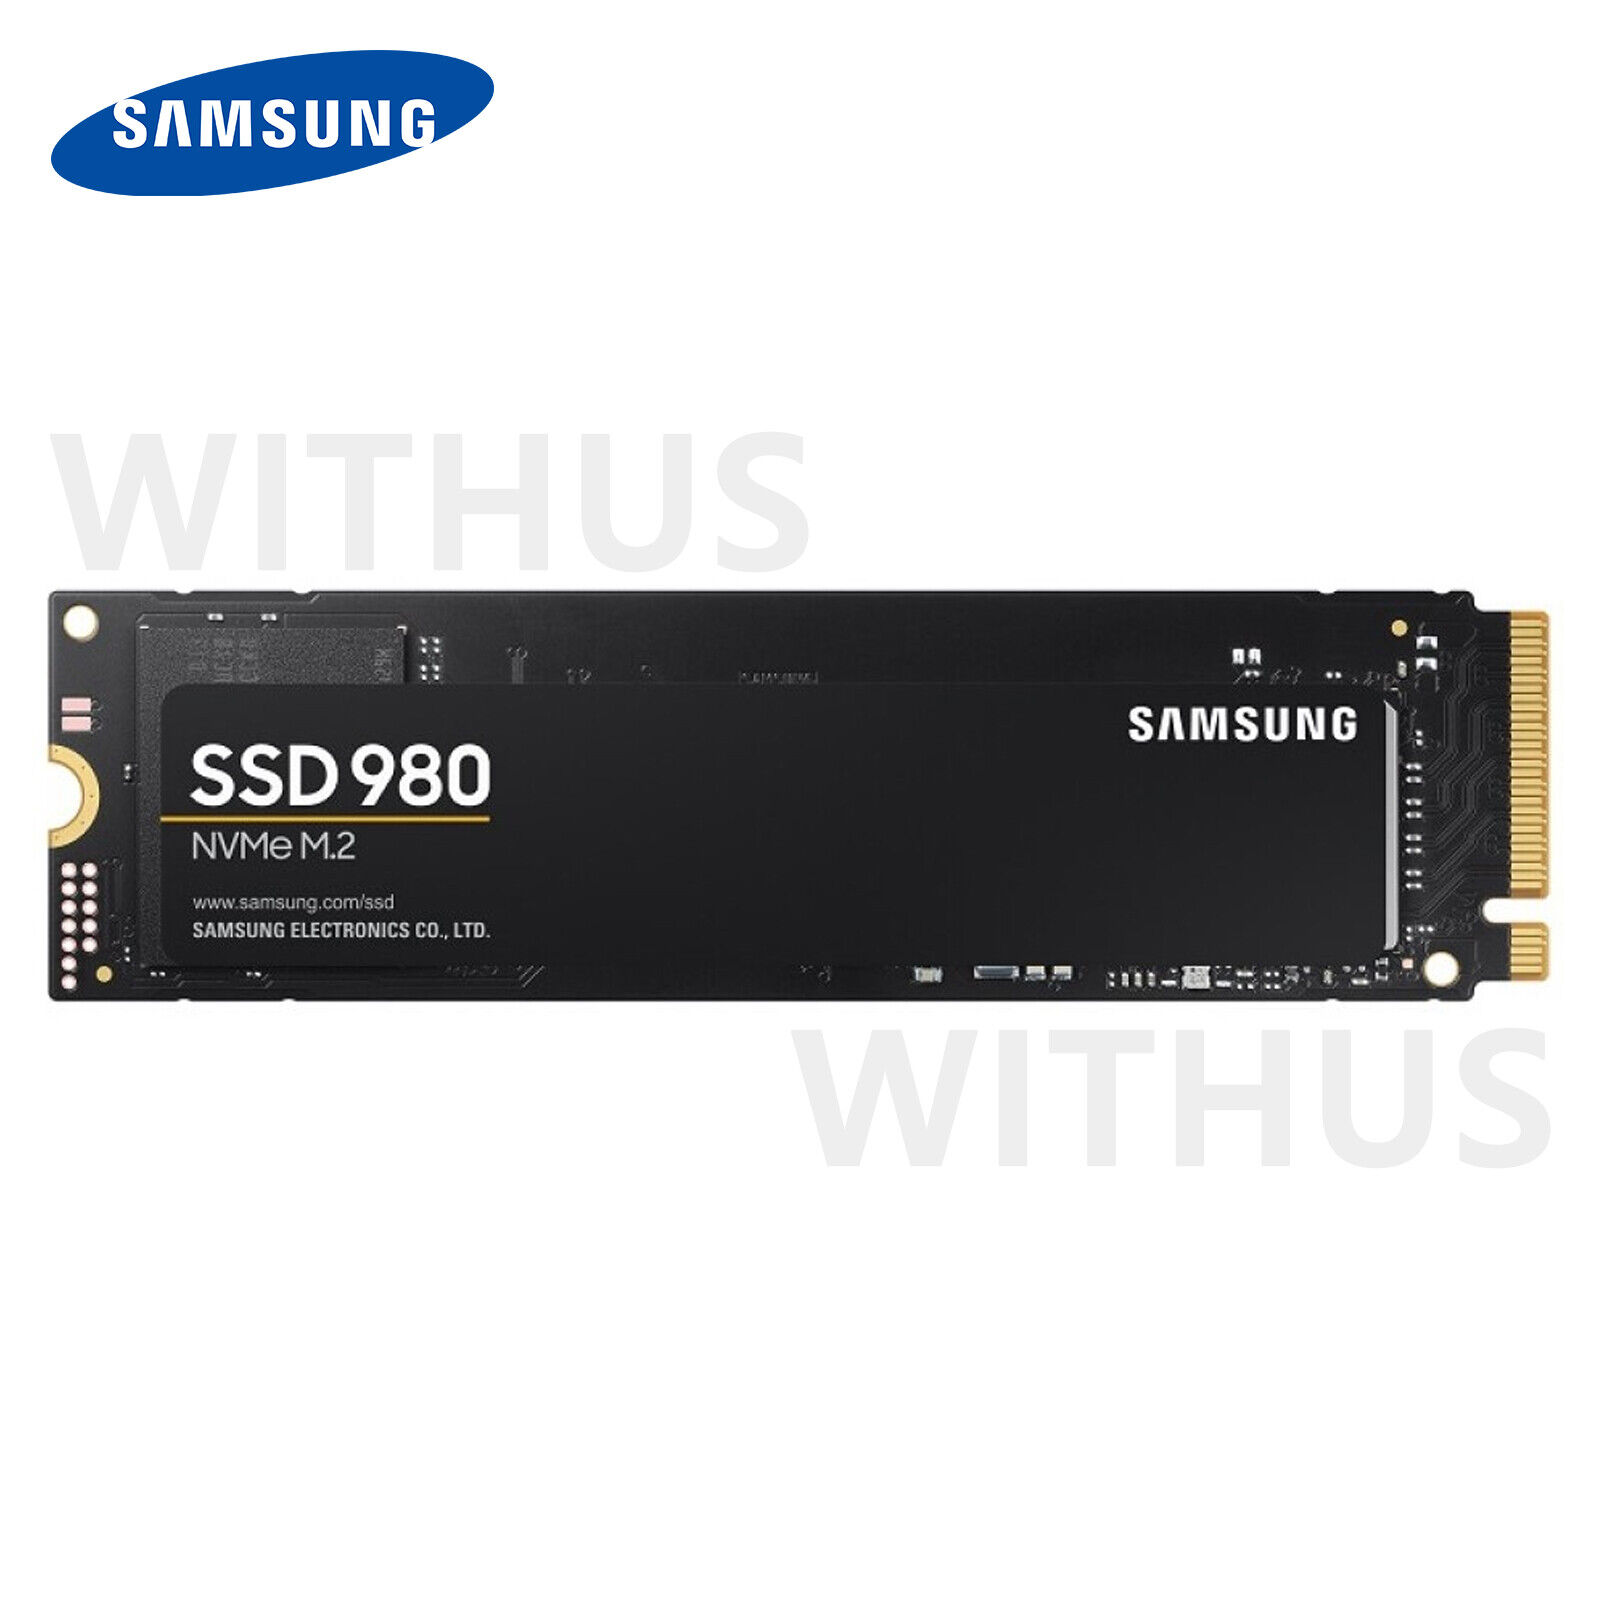 Samsung SSD 980 M.2 NVMe1.4 1TB MZ-V8V1T0BW PCIe 3.0x4 - Fedex Express